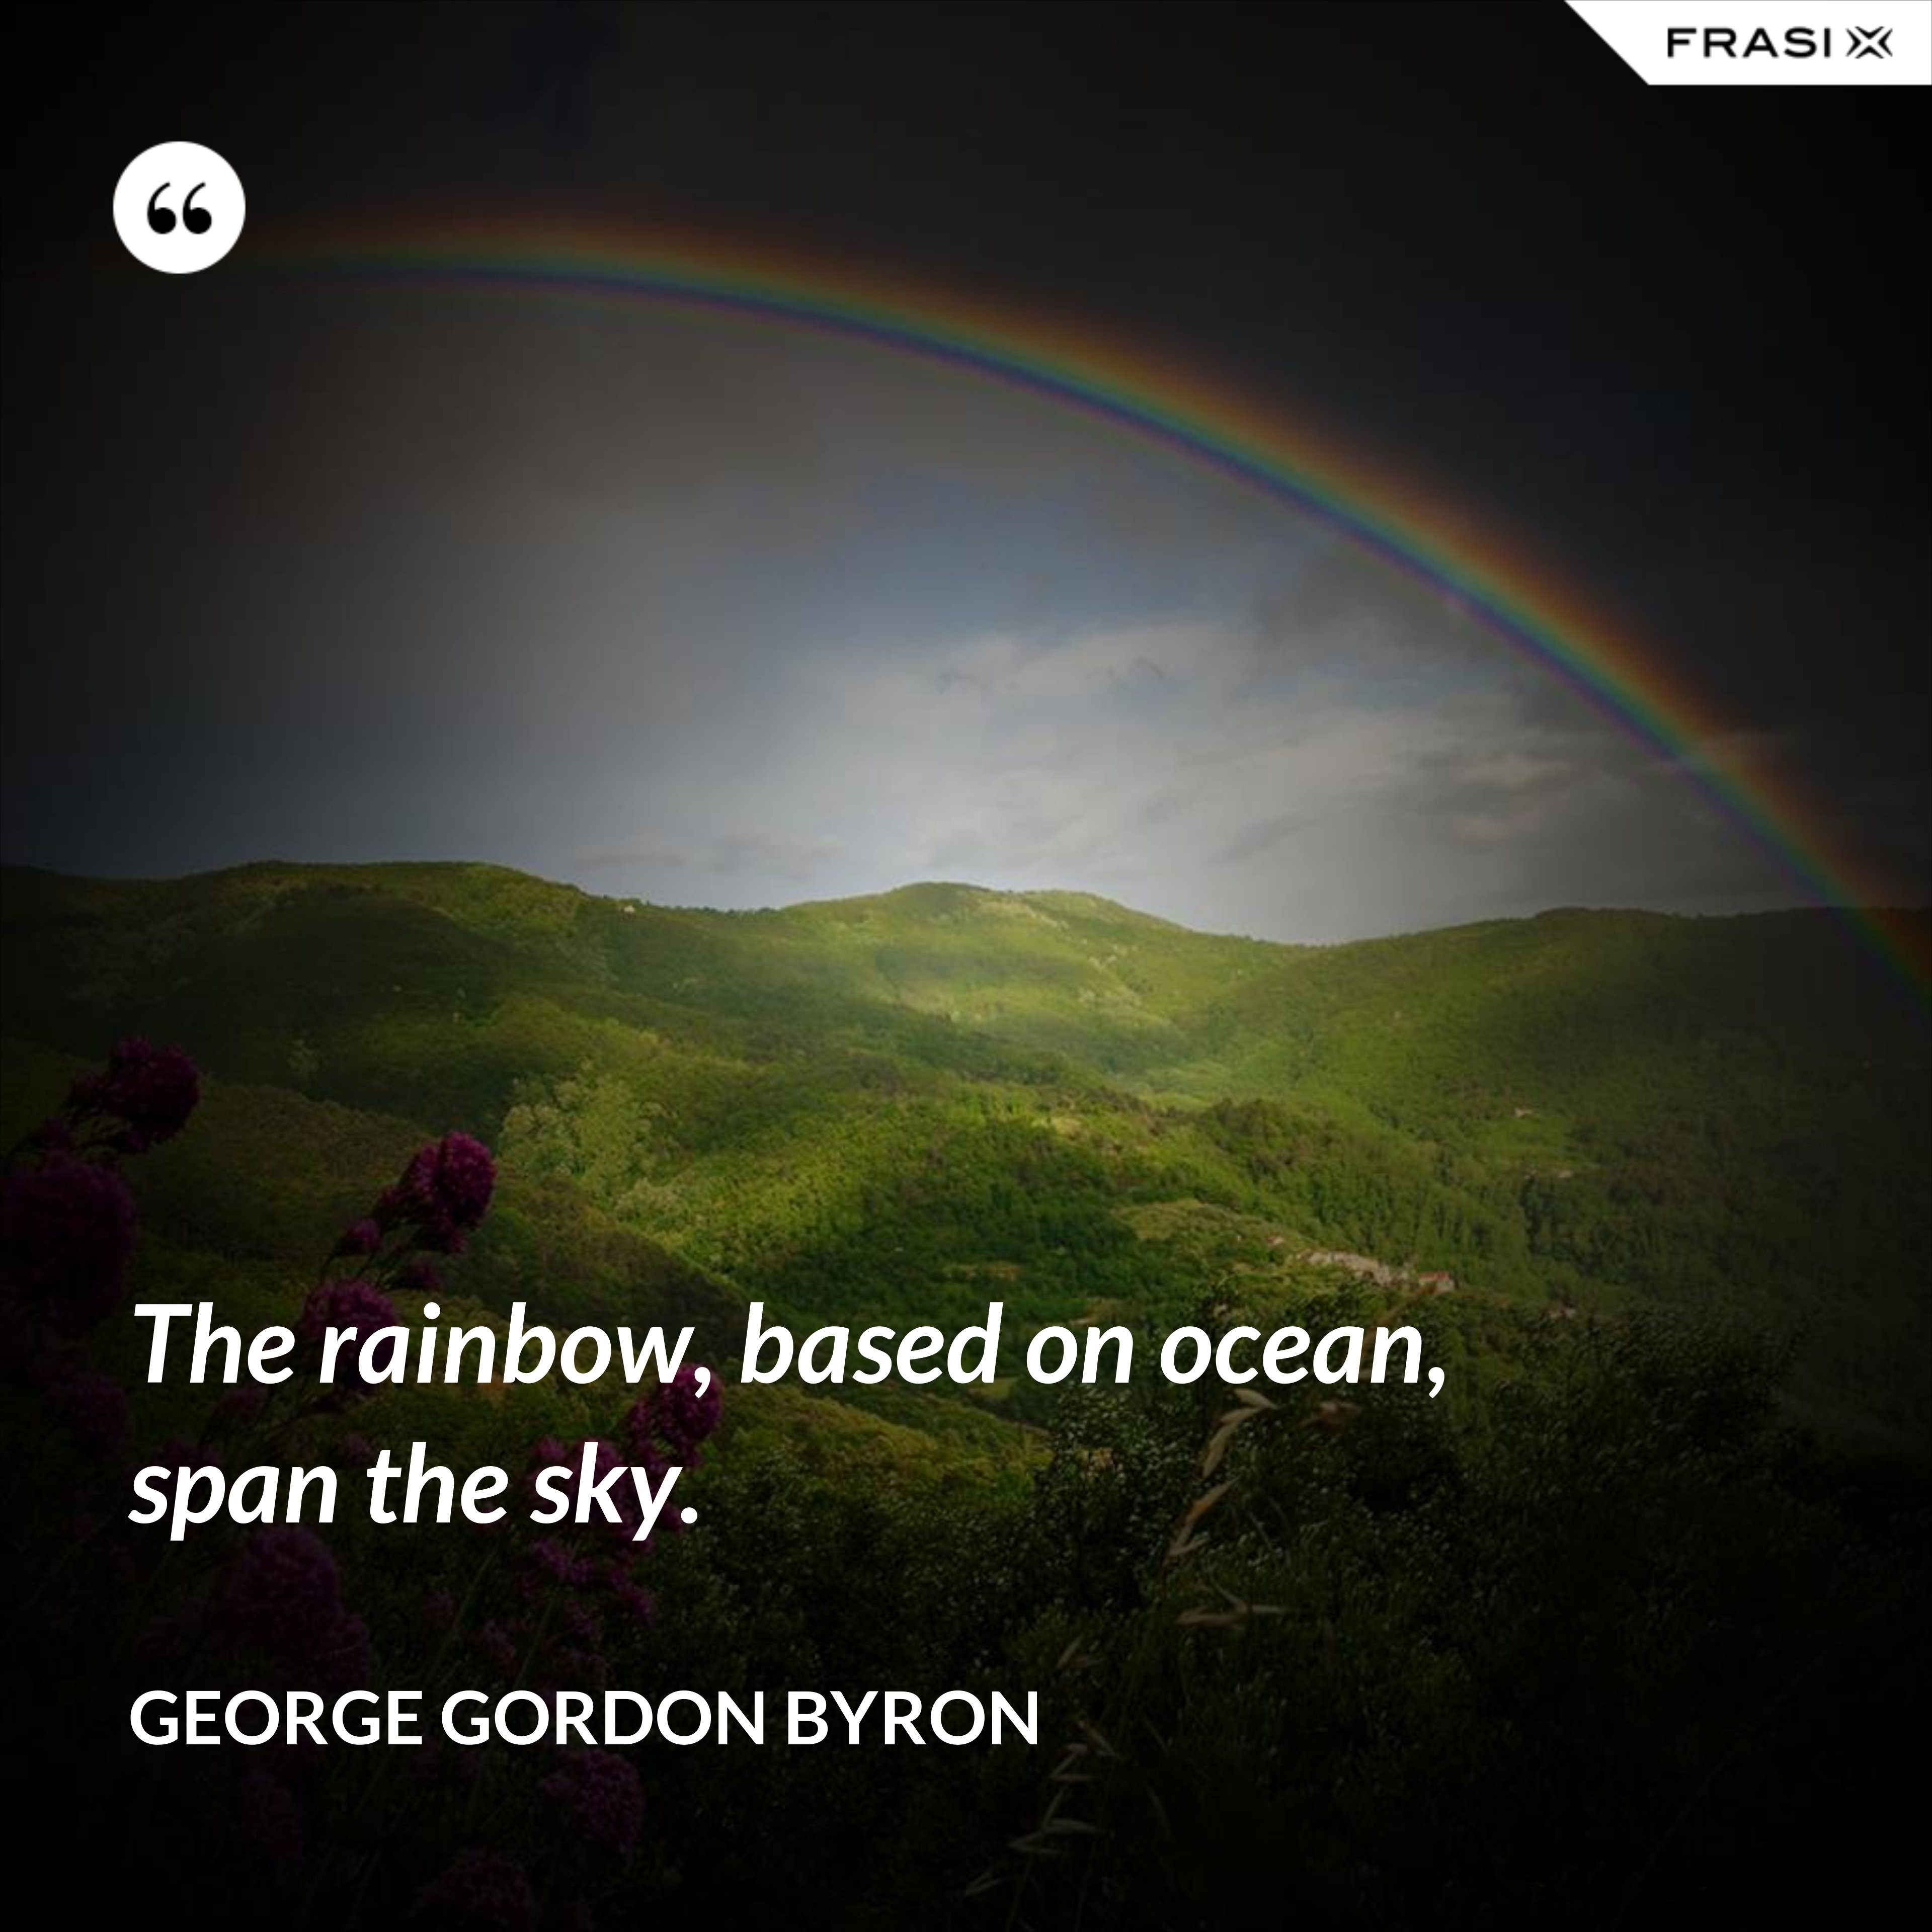 The rainbow, based on ocean, span the sky. - George Gordon Byron